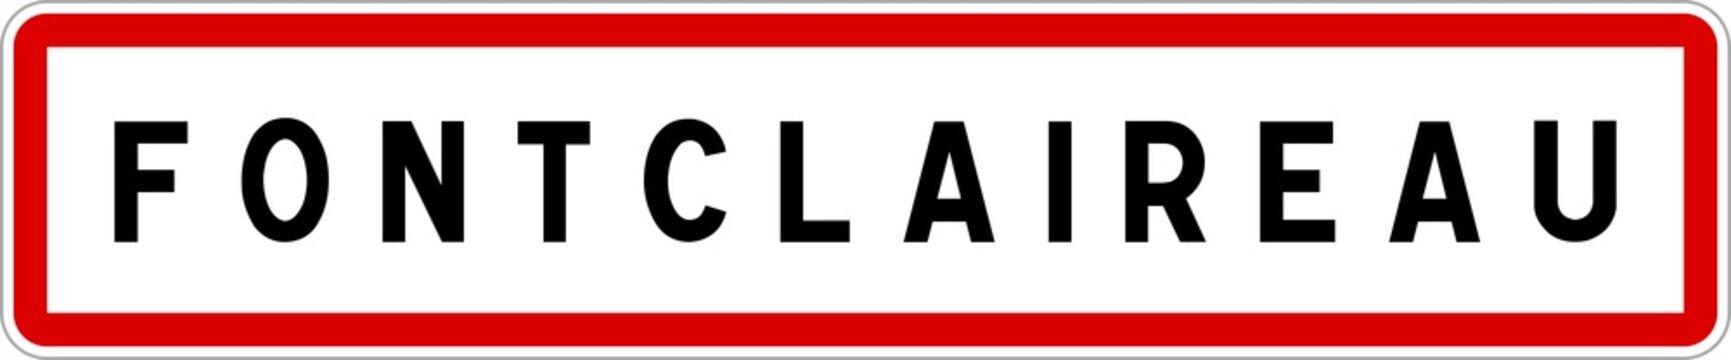 Panneau entrée ville agglomération Fontclaireau / Town entrance sign Fontclaireau